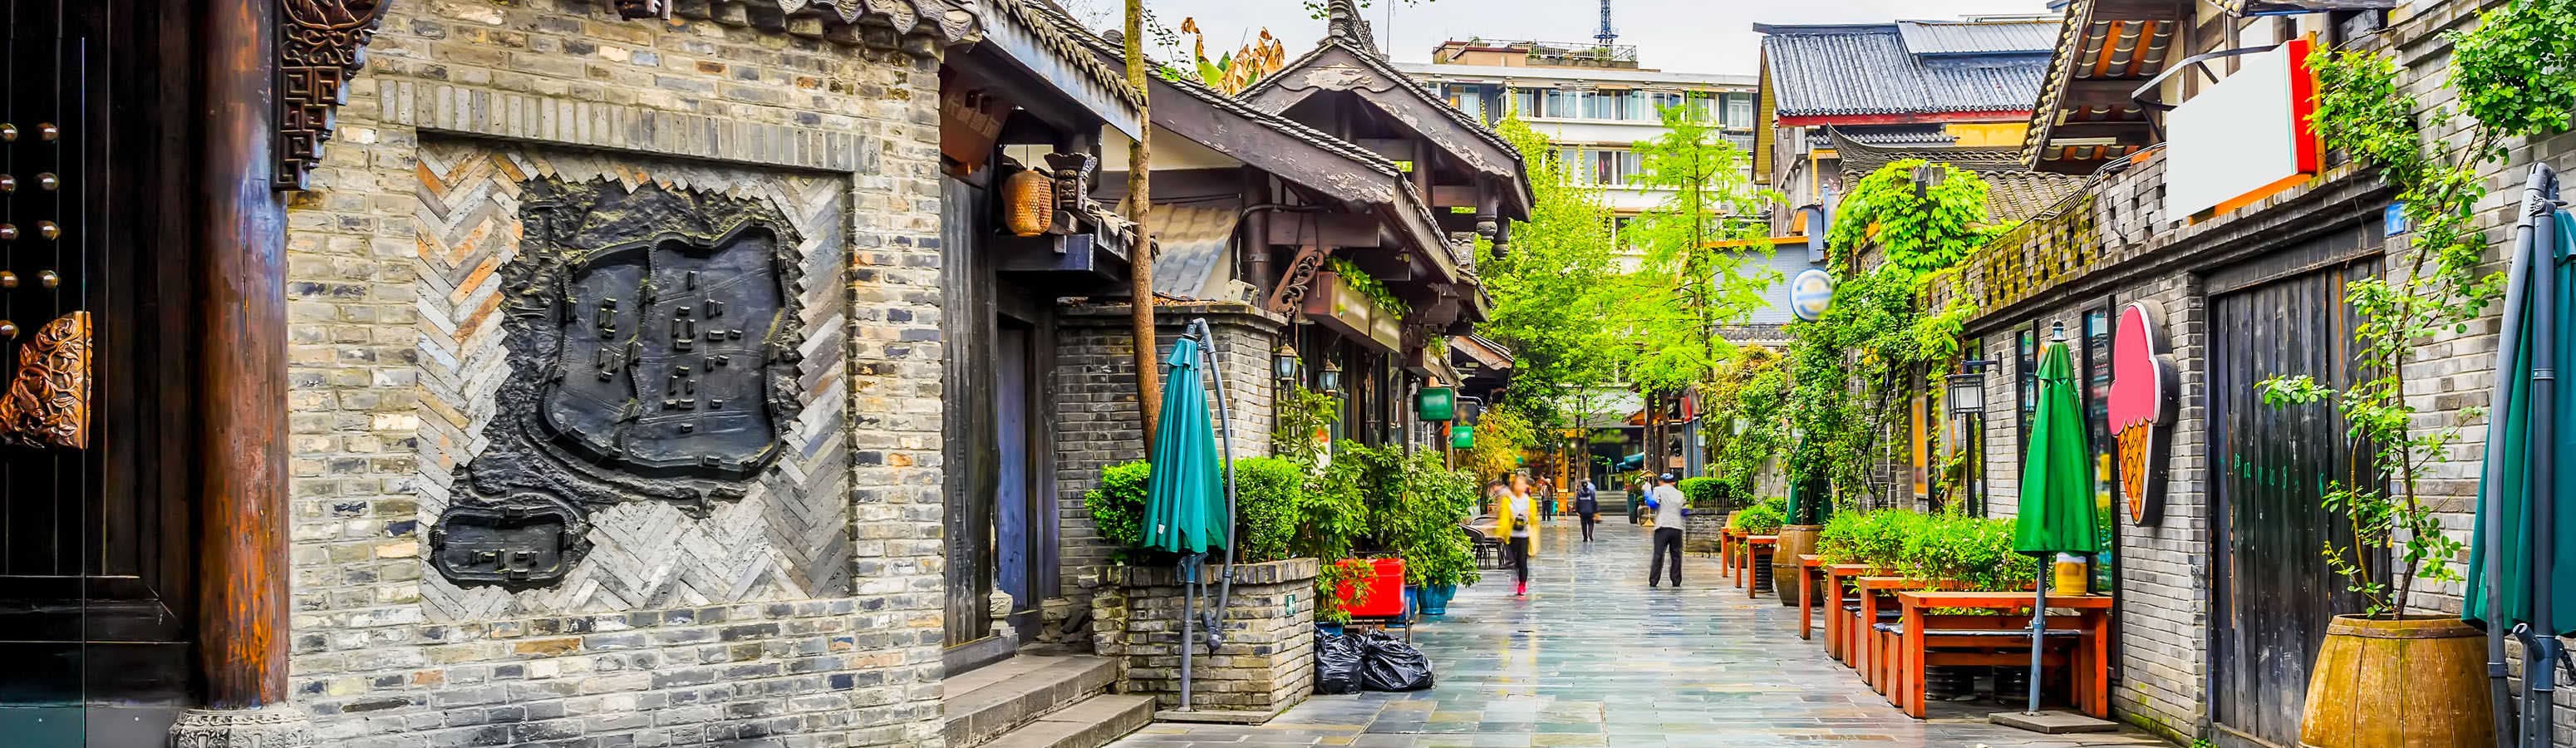 Visit the southwest of China - Chengdu